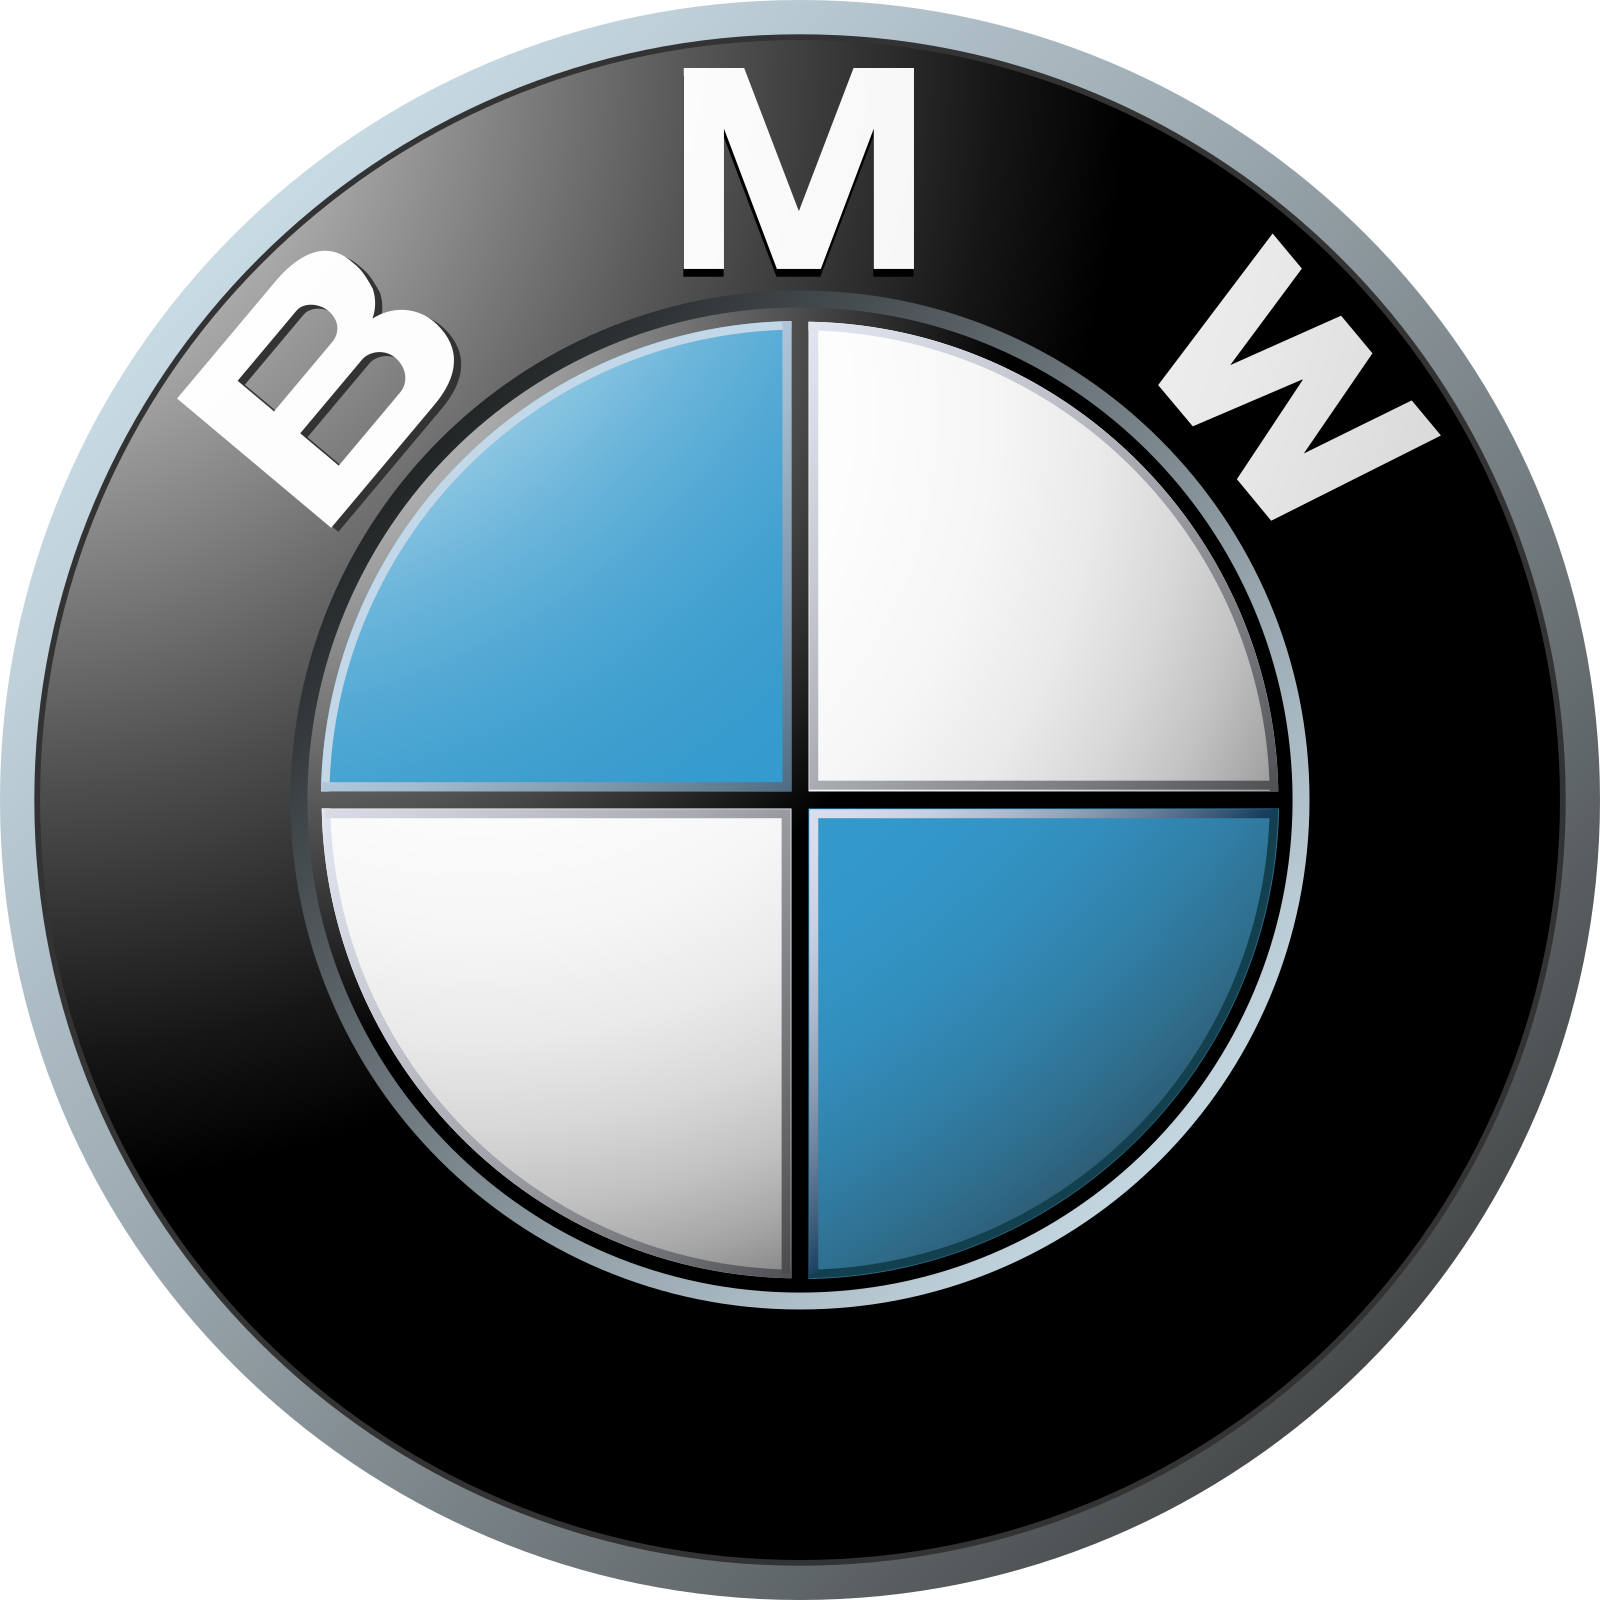 BMW Canada